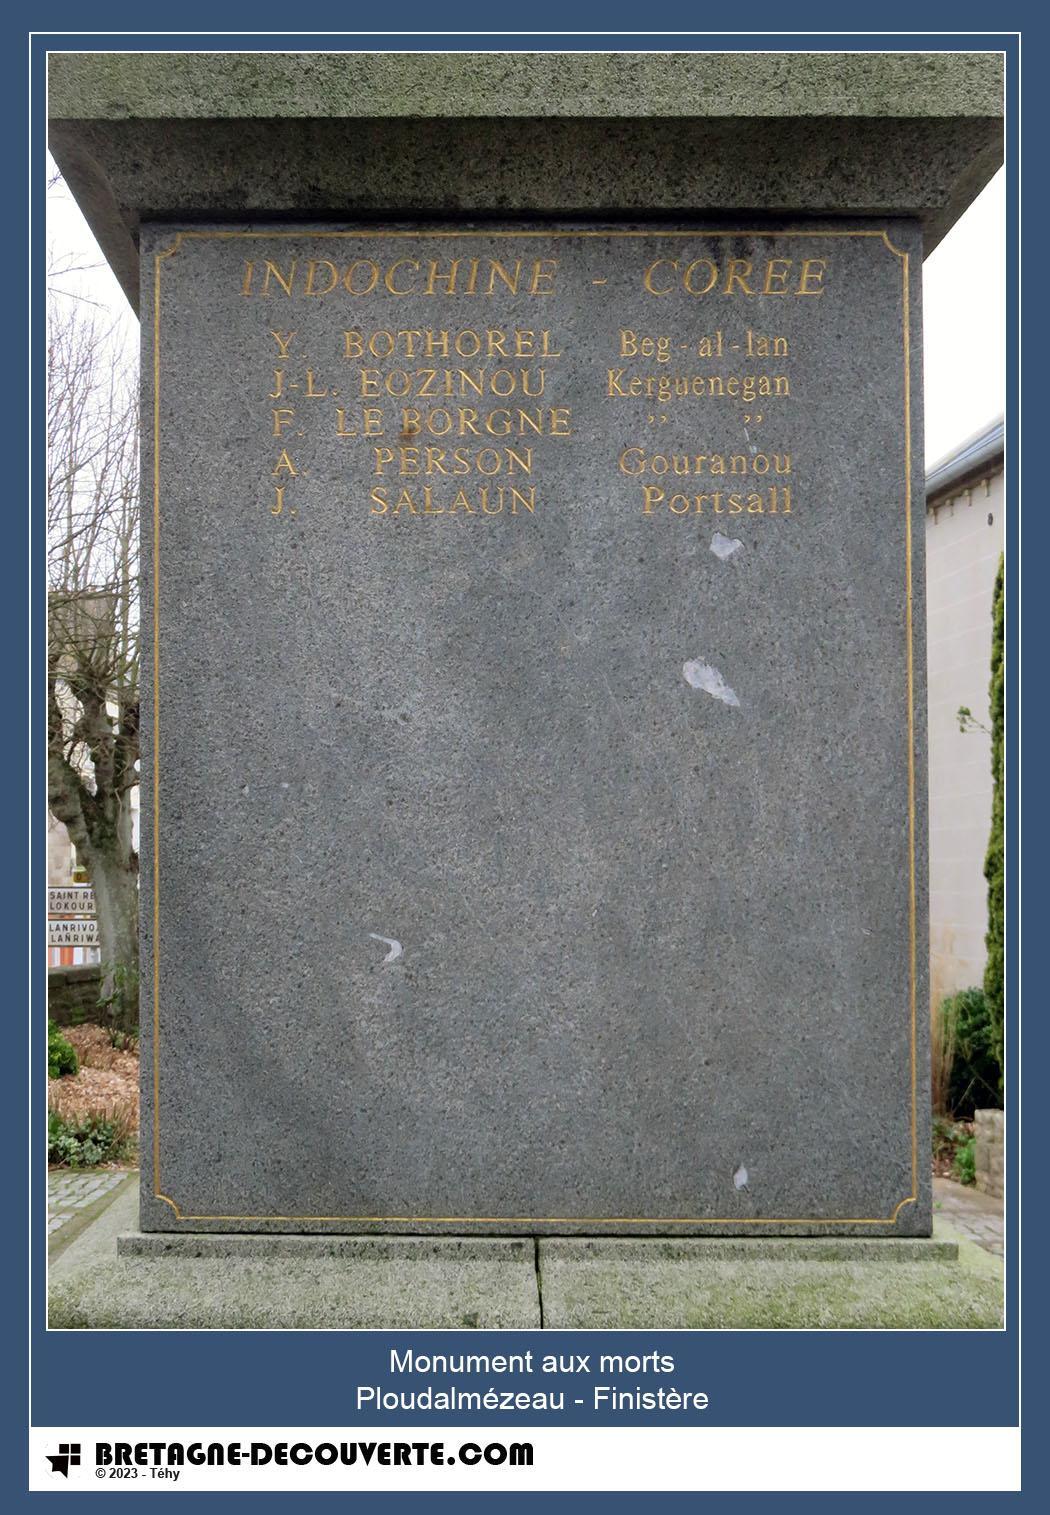 Les noms gravés sur le monument aux morts de Ploudalmézeau